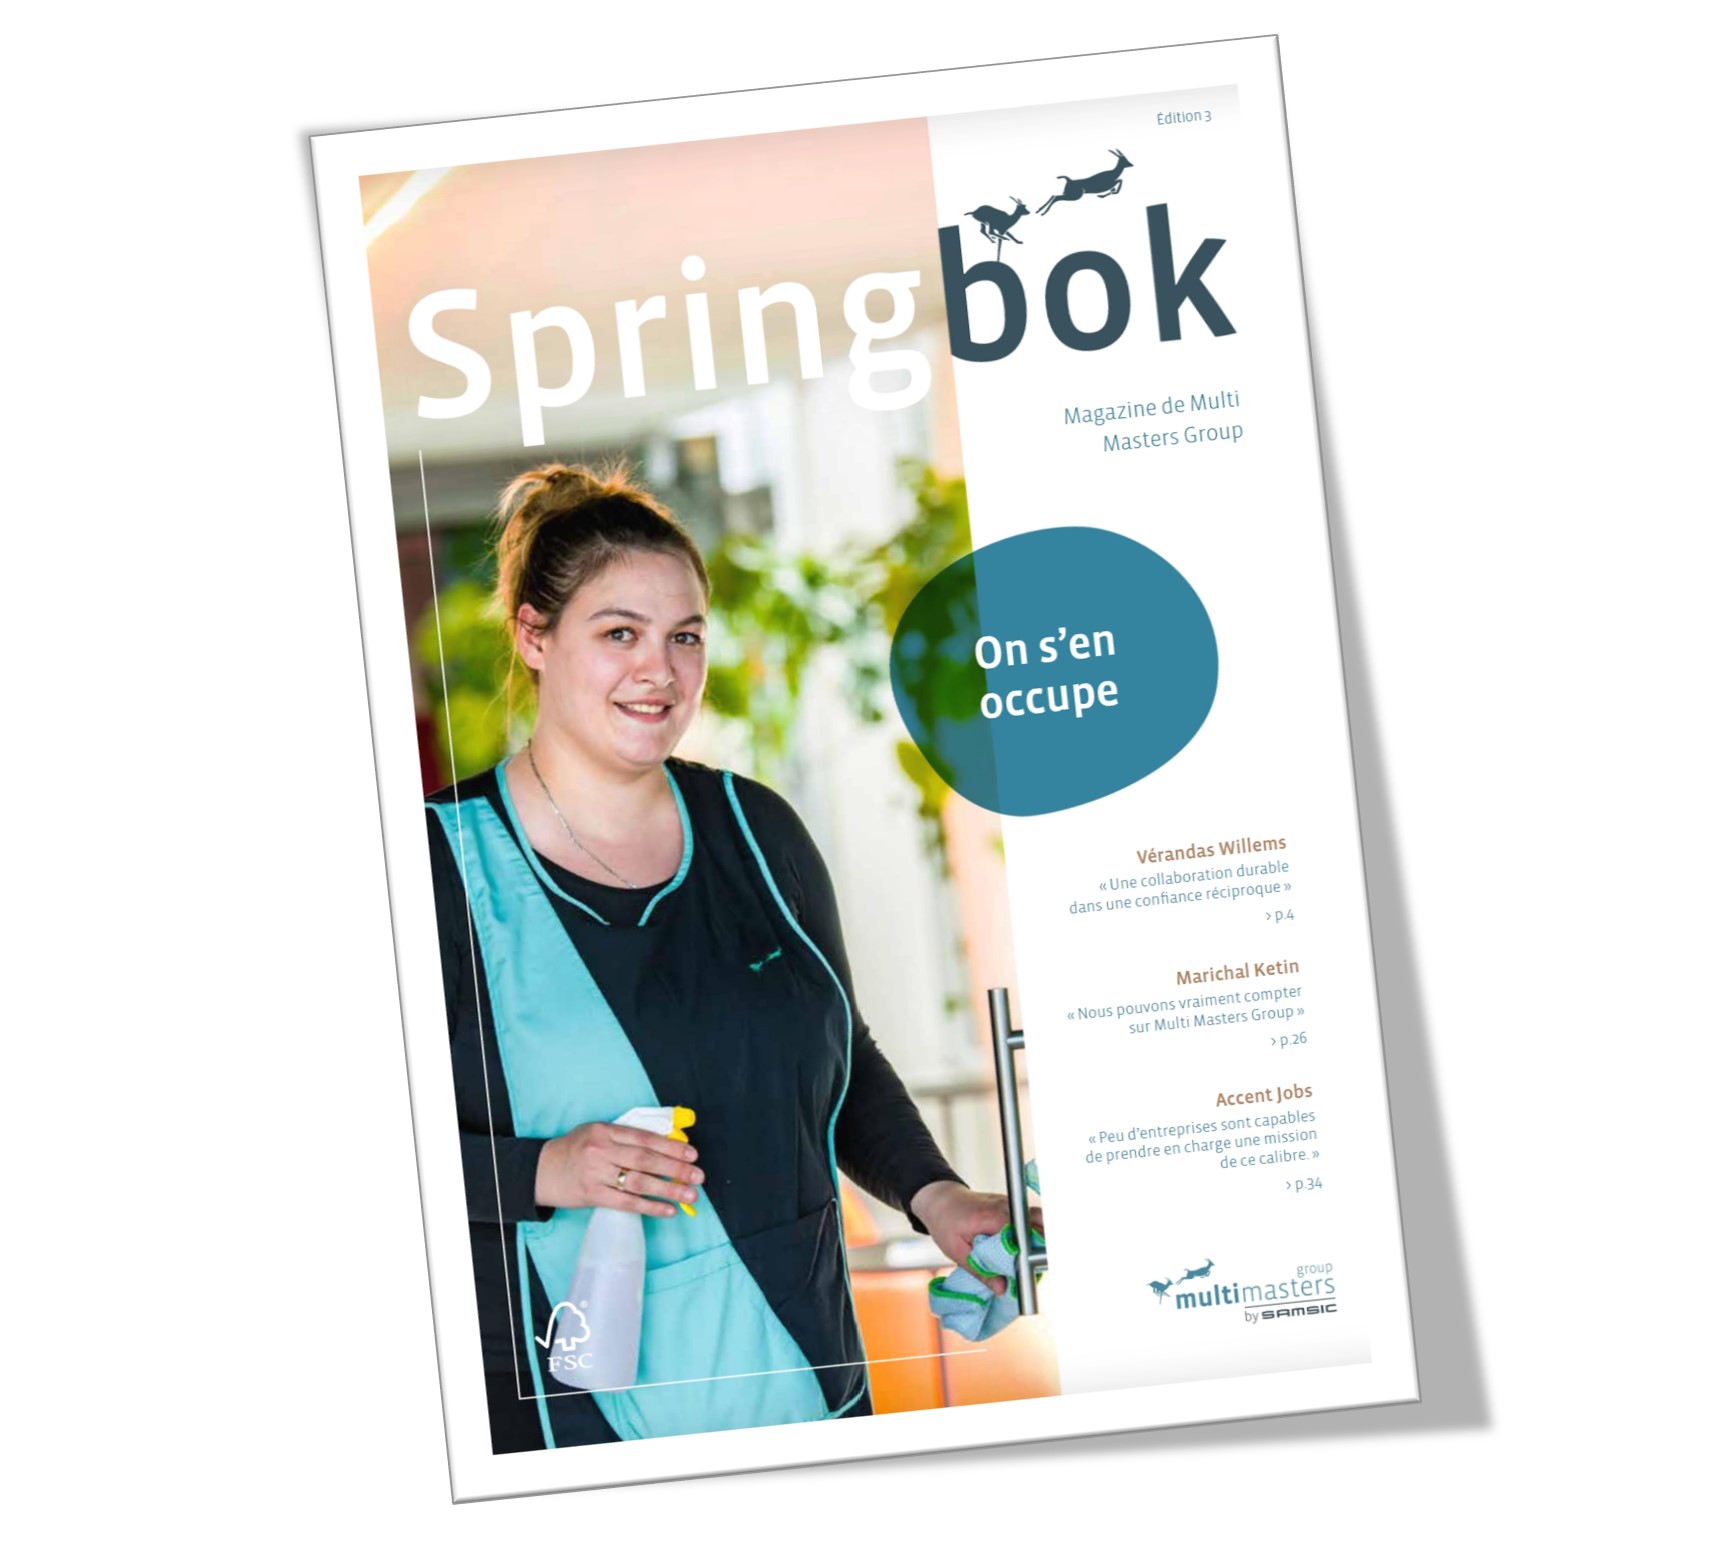 La nouvelle édition de Springbok, le magazine de Multi Masters Group, est diponisble.